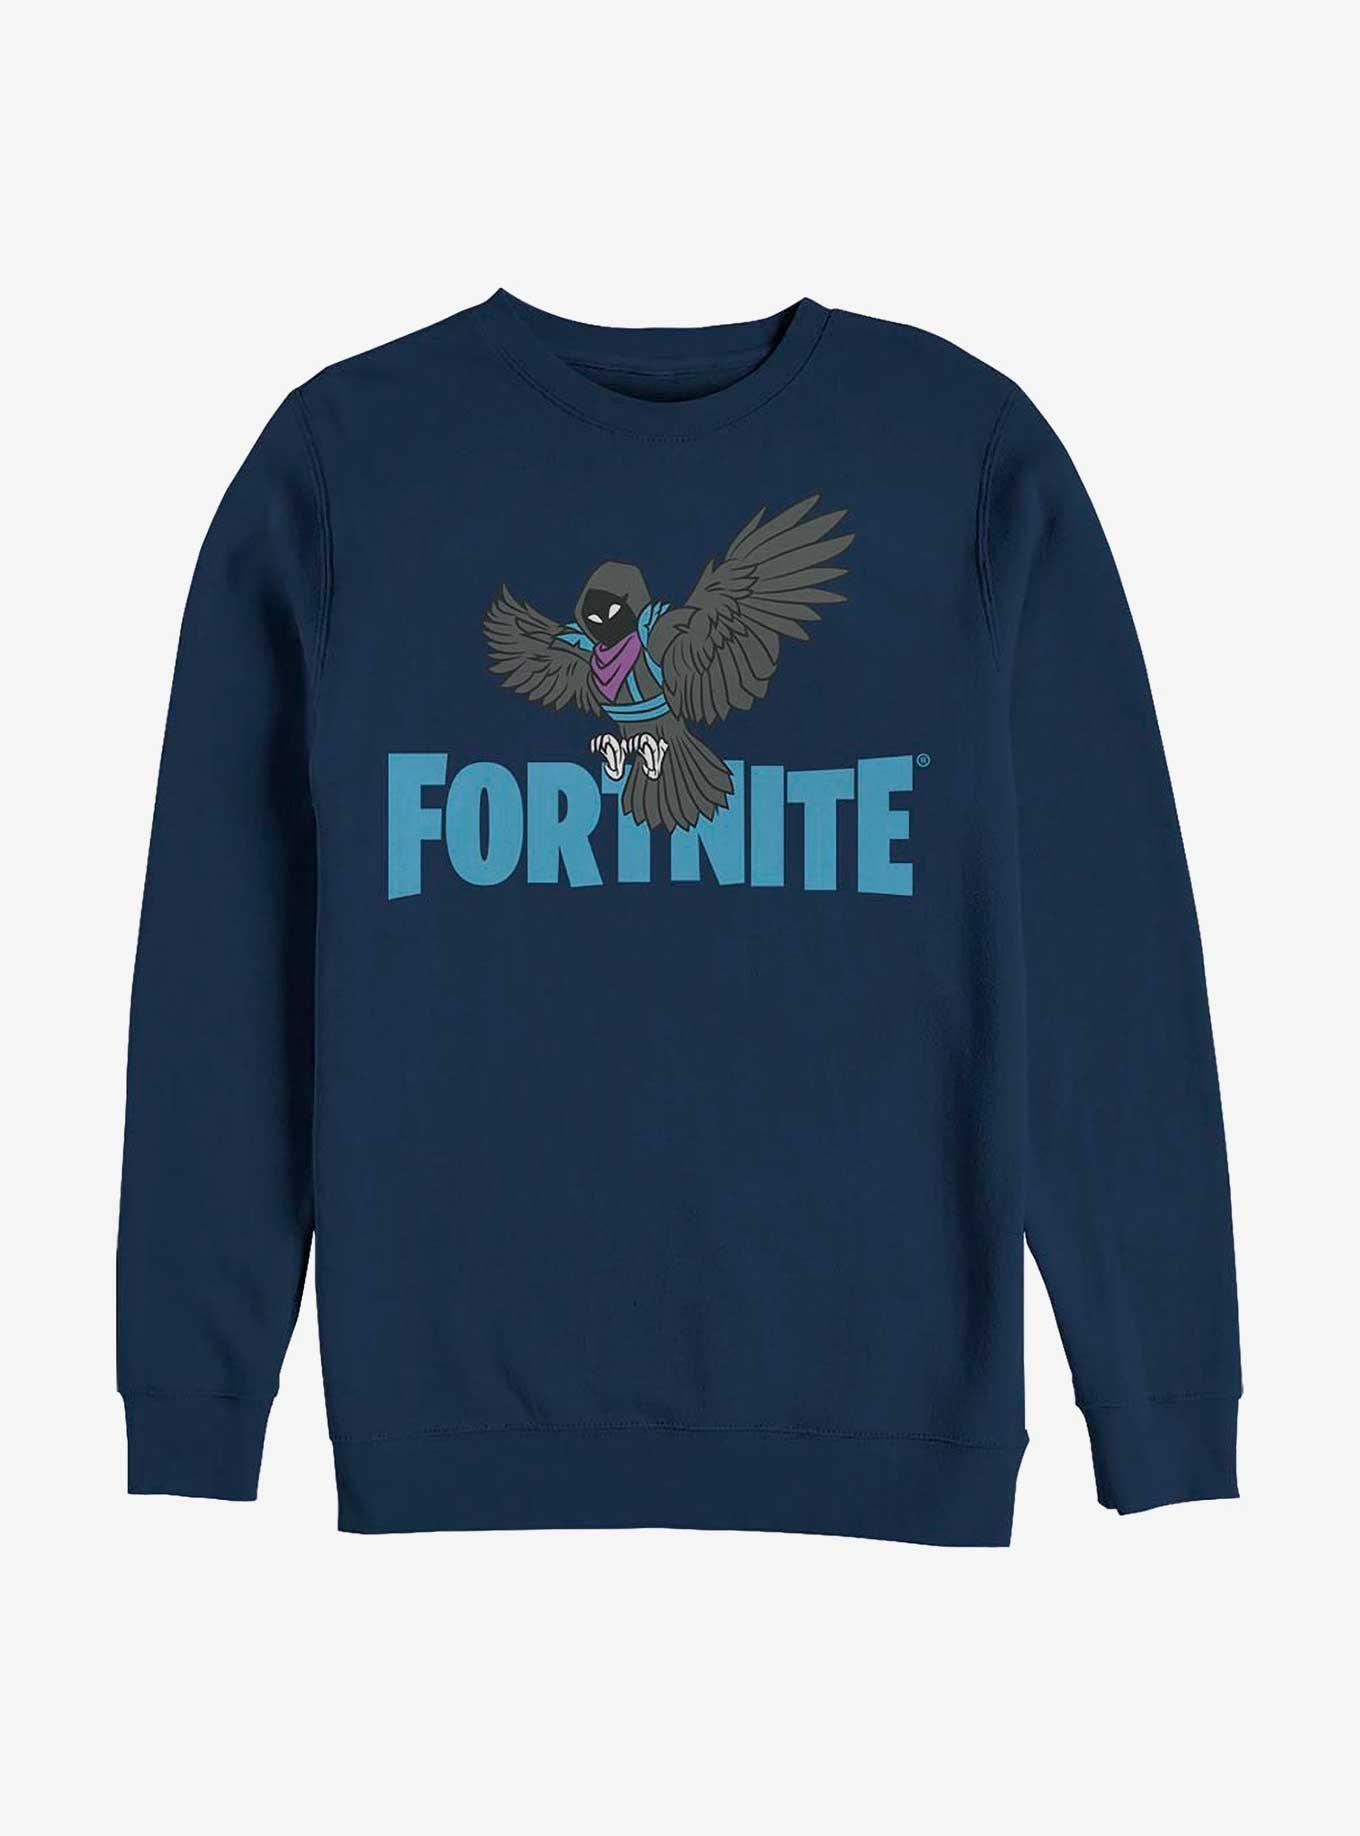 Fortnite Raven Wings Sweatshirt, NAVY, hi-res